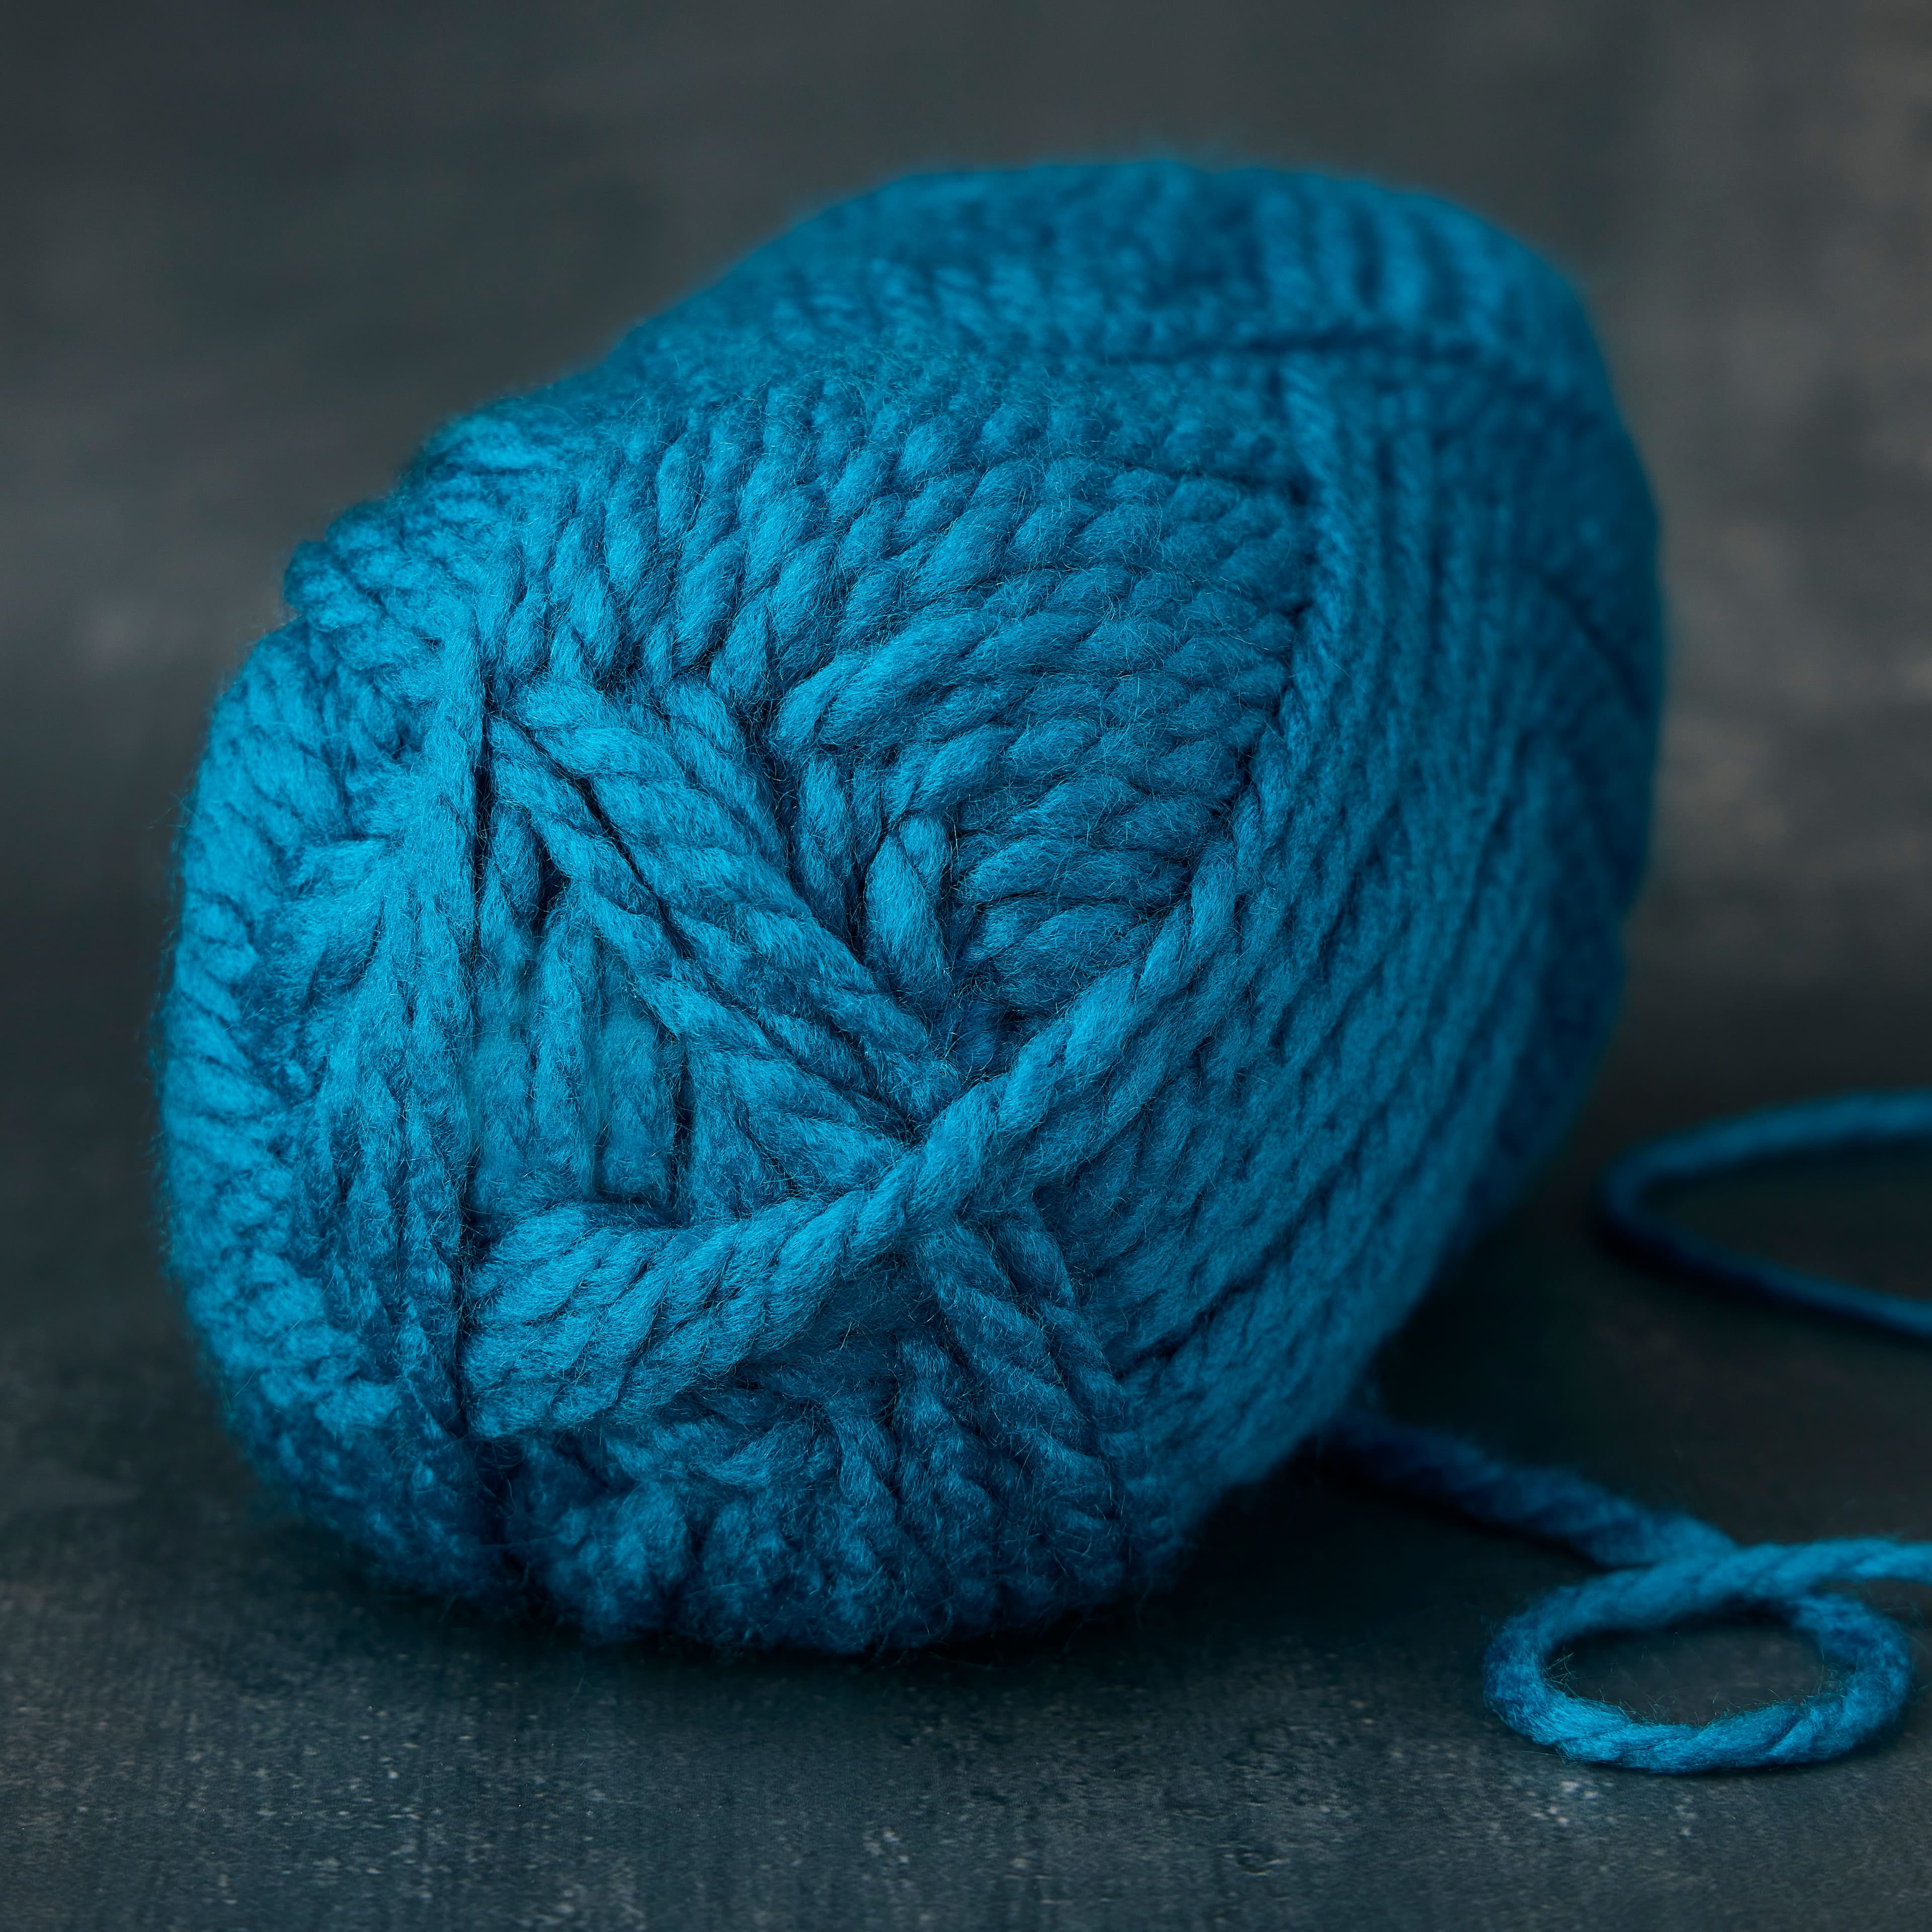 Loops & Threads Charisma Tweed Yarn - Black - 3 oz - One Ball